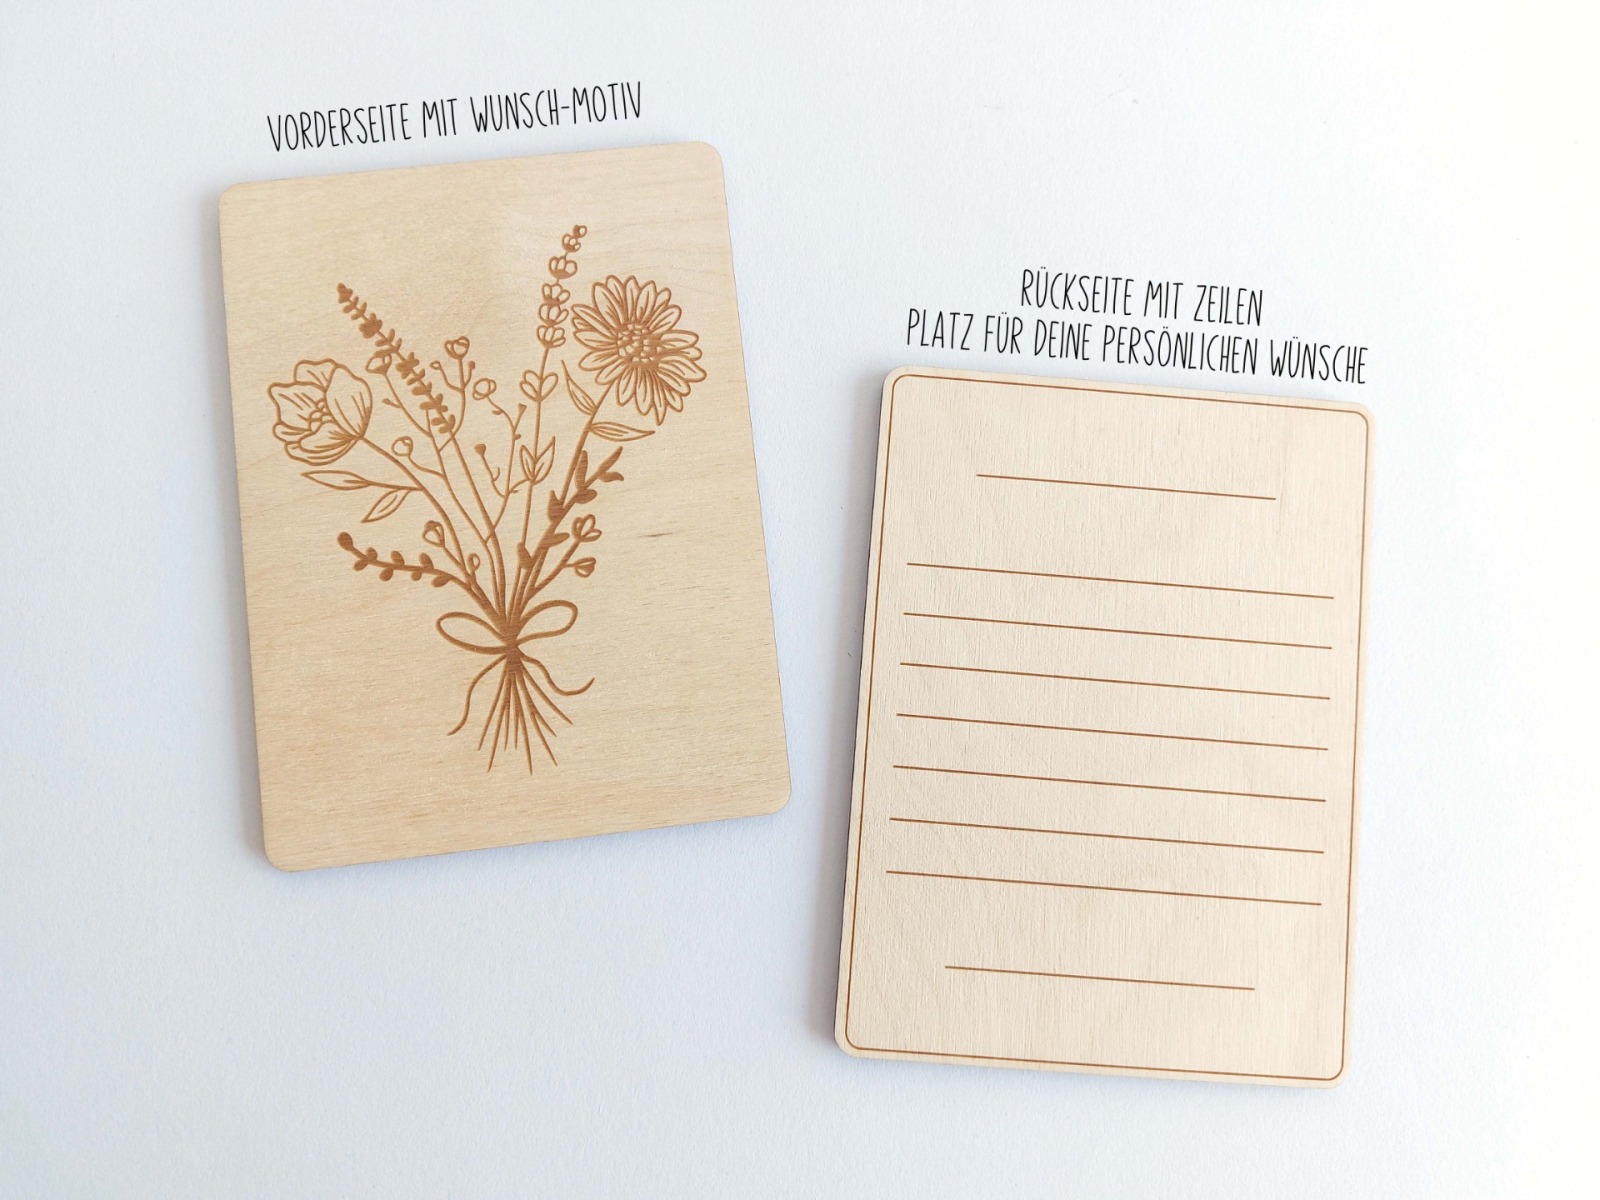 Holzkarte mit Blumen Motiv - Danke Blumen - Holz Postkarten Format - Grußkarten aus Holz Erinnerungskarte Muttertag Besondere Karte 4